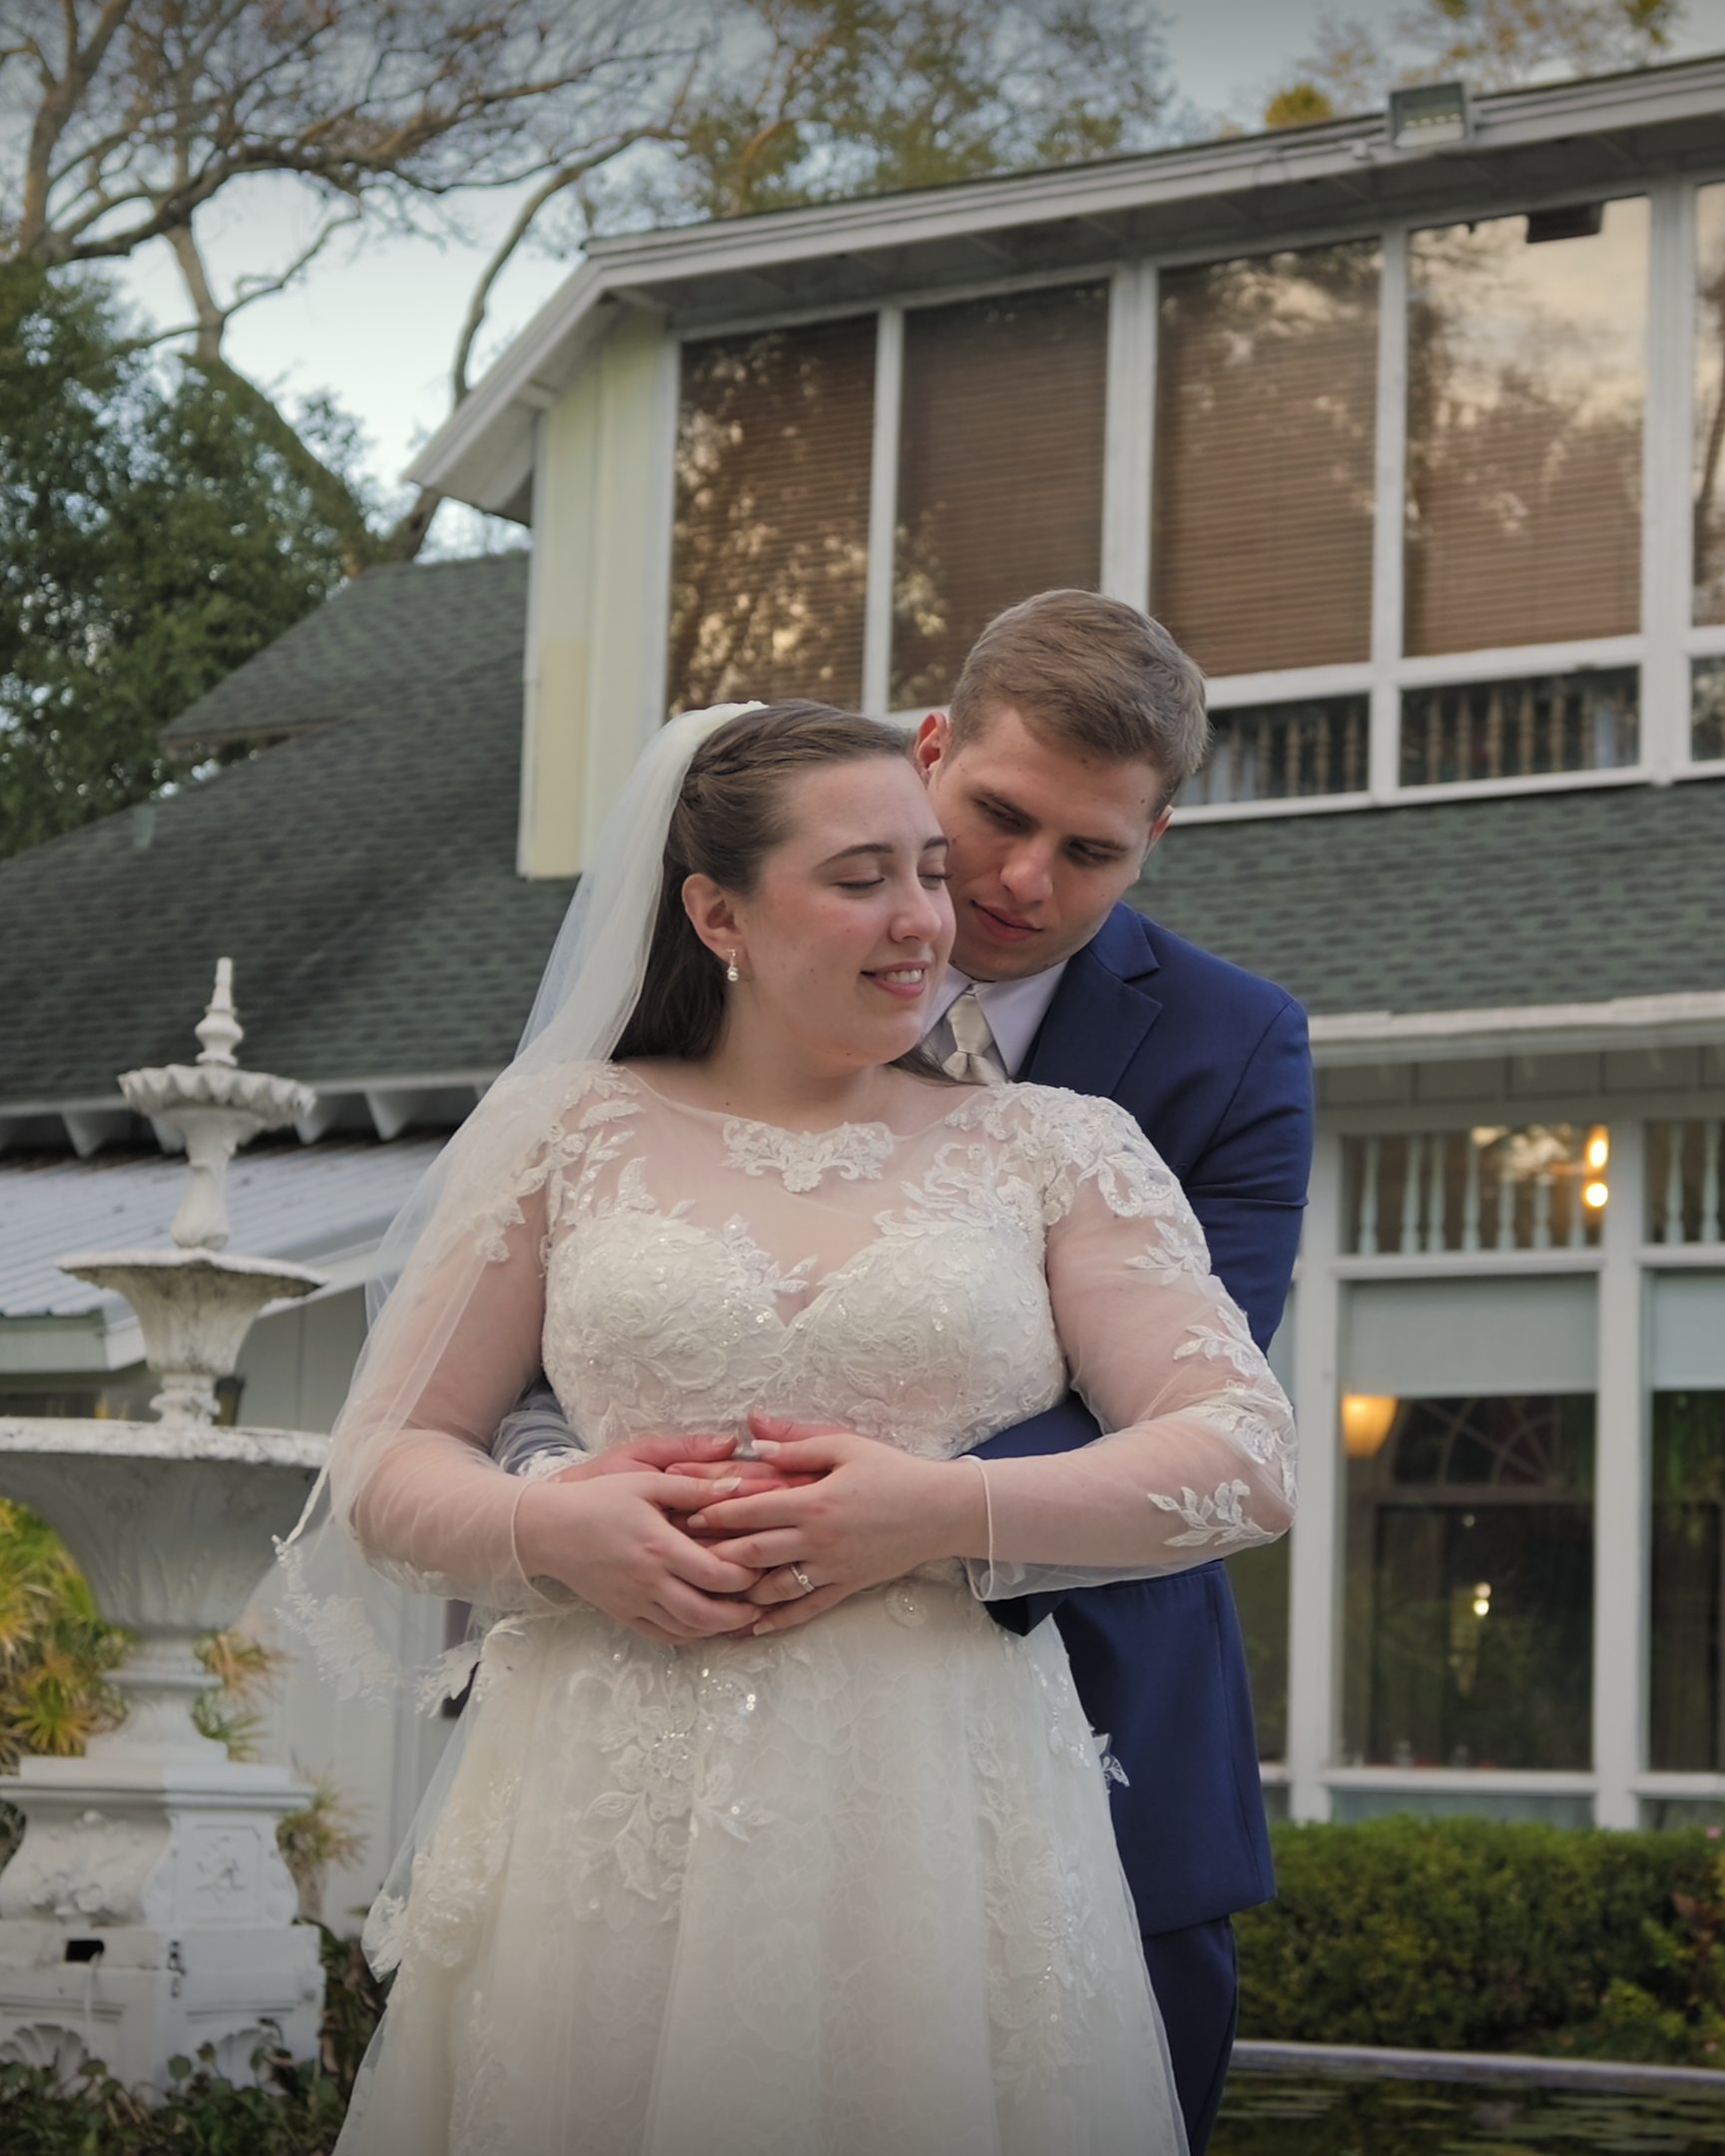 Garrett & Mckenna Wedding Video at The Hilltop Restaurant in Jacksonville Florida